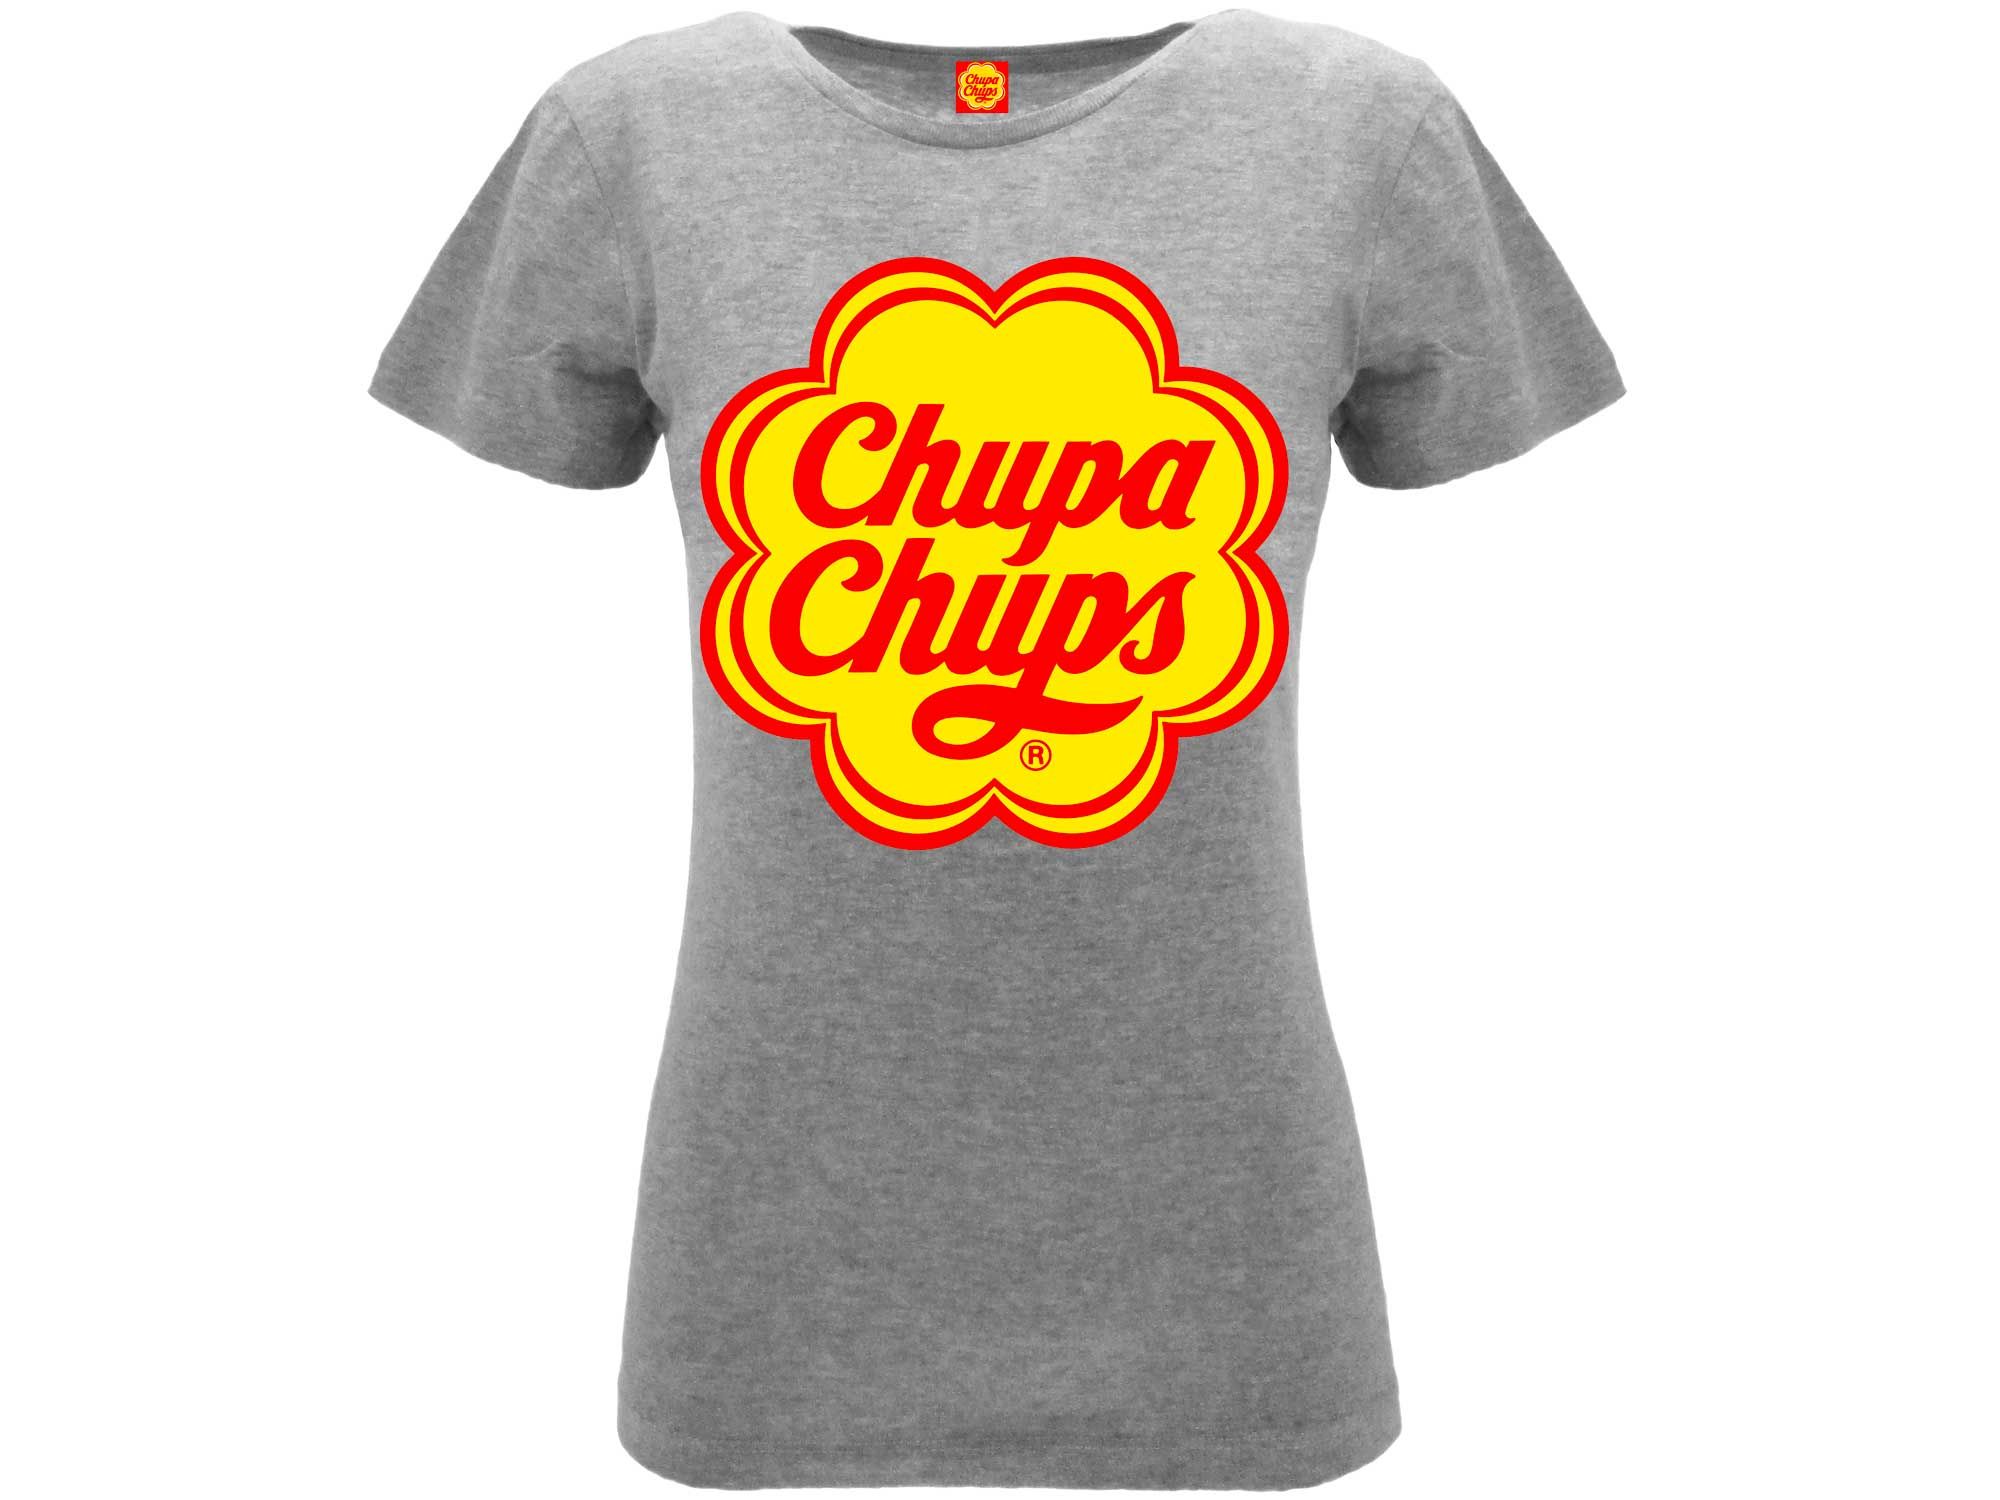 T-shirt Chupa Chups - Solo € 19.99! Acquista ora su ALLAN&DAYLE 